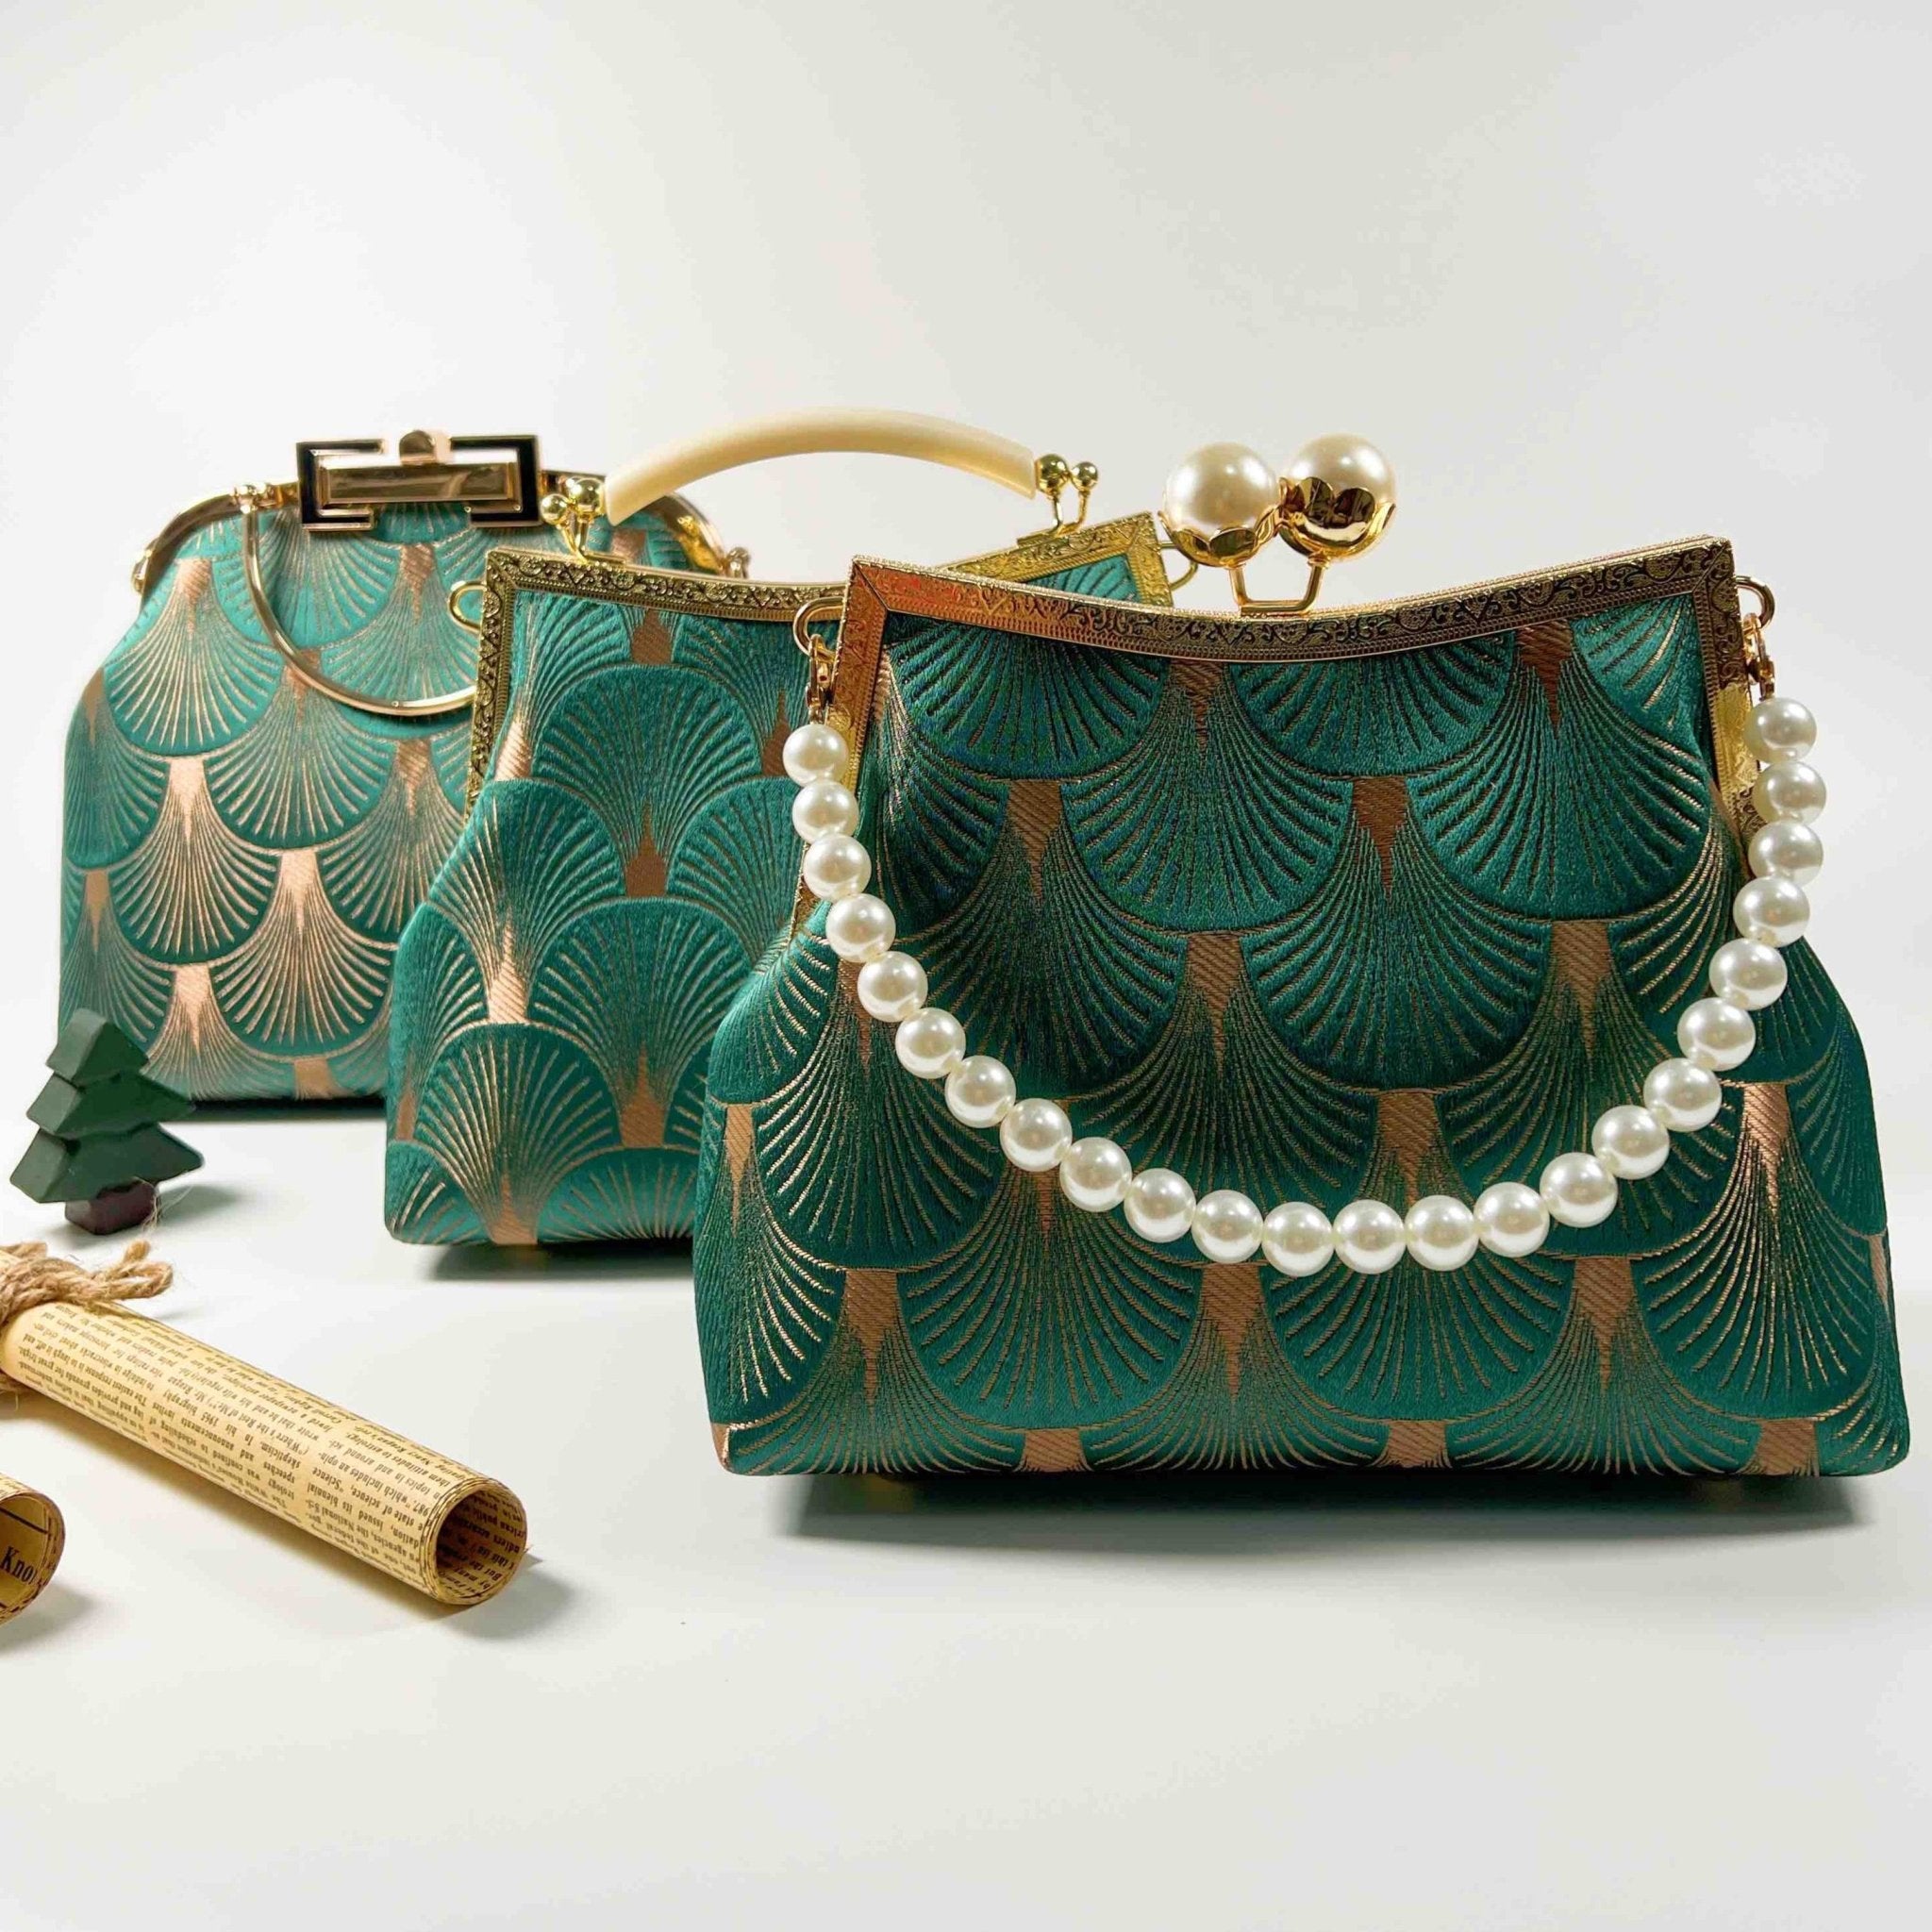 Designer Clutch with Flower Motifs | Fancy clutch purse, Clutch fashion,  Evening clutch bag